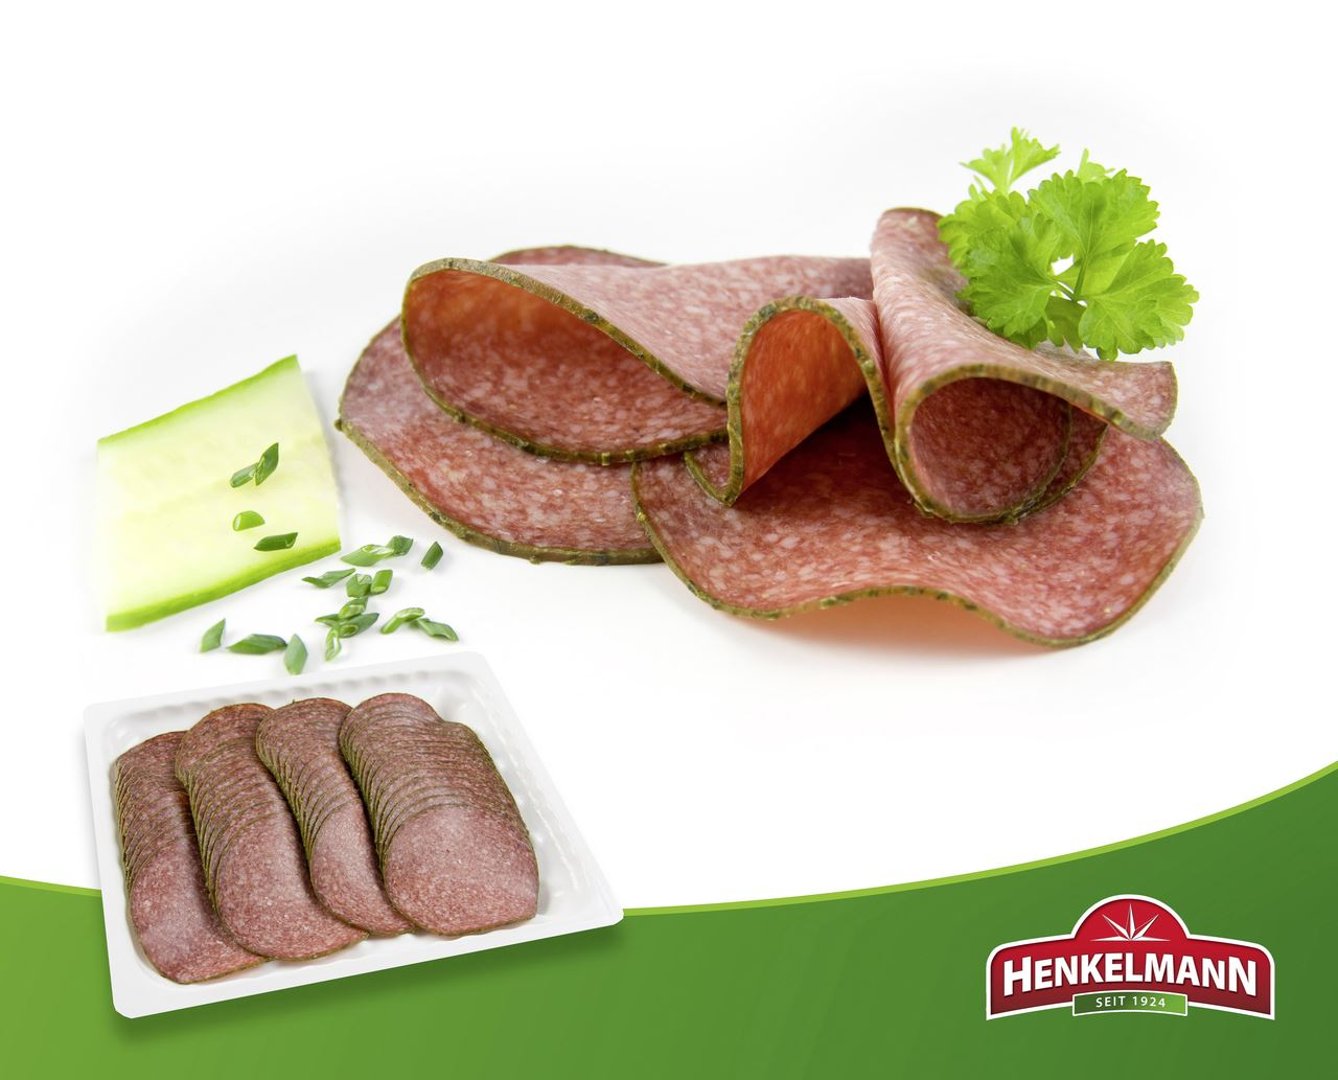 Henkelmann - Delikatess Kräuter-Salami Italienische Art - 500 g Packung